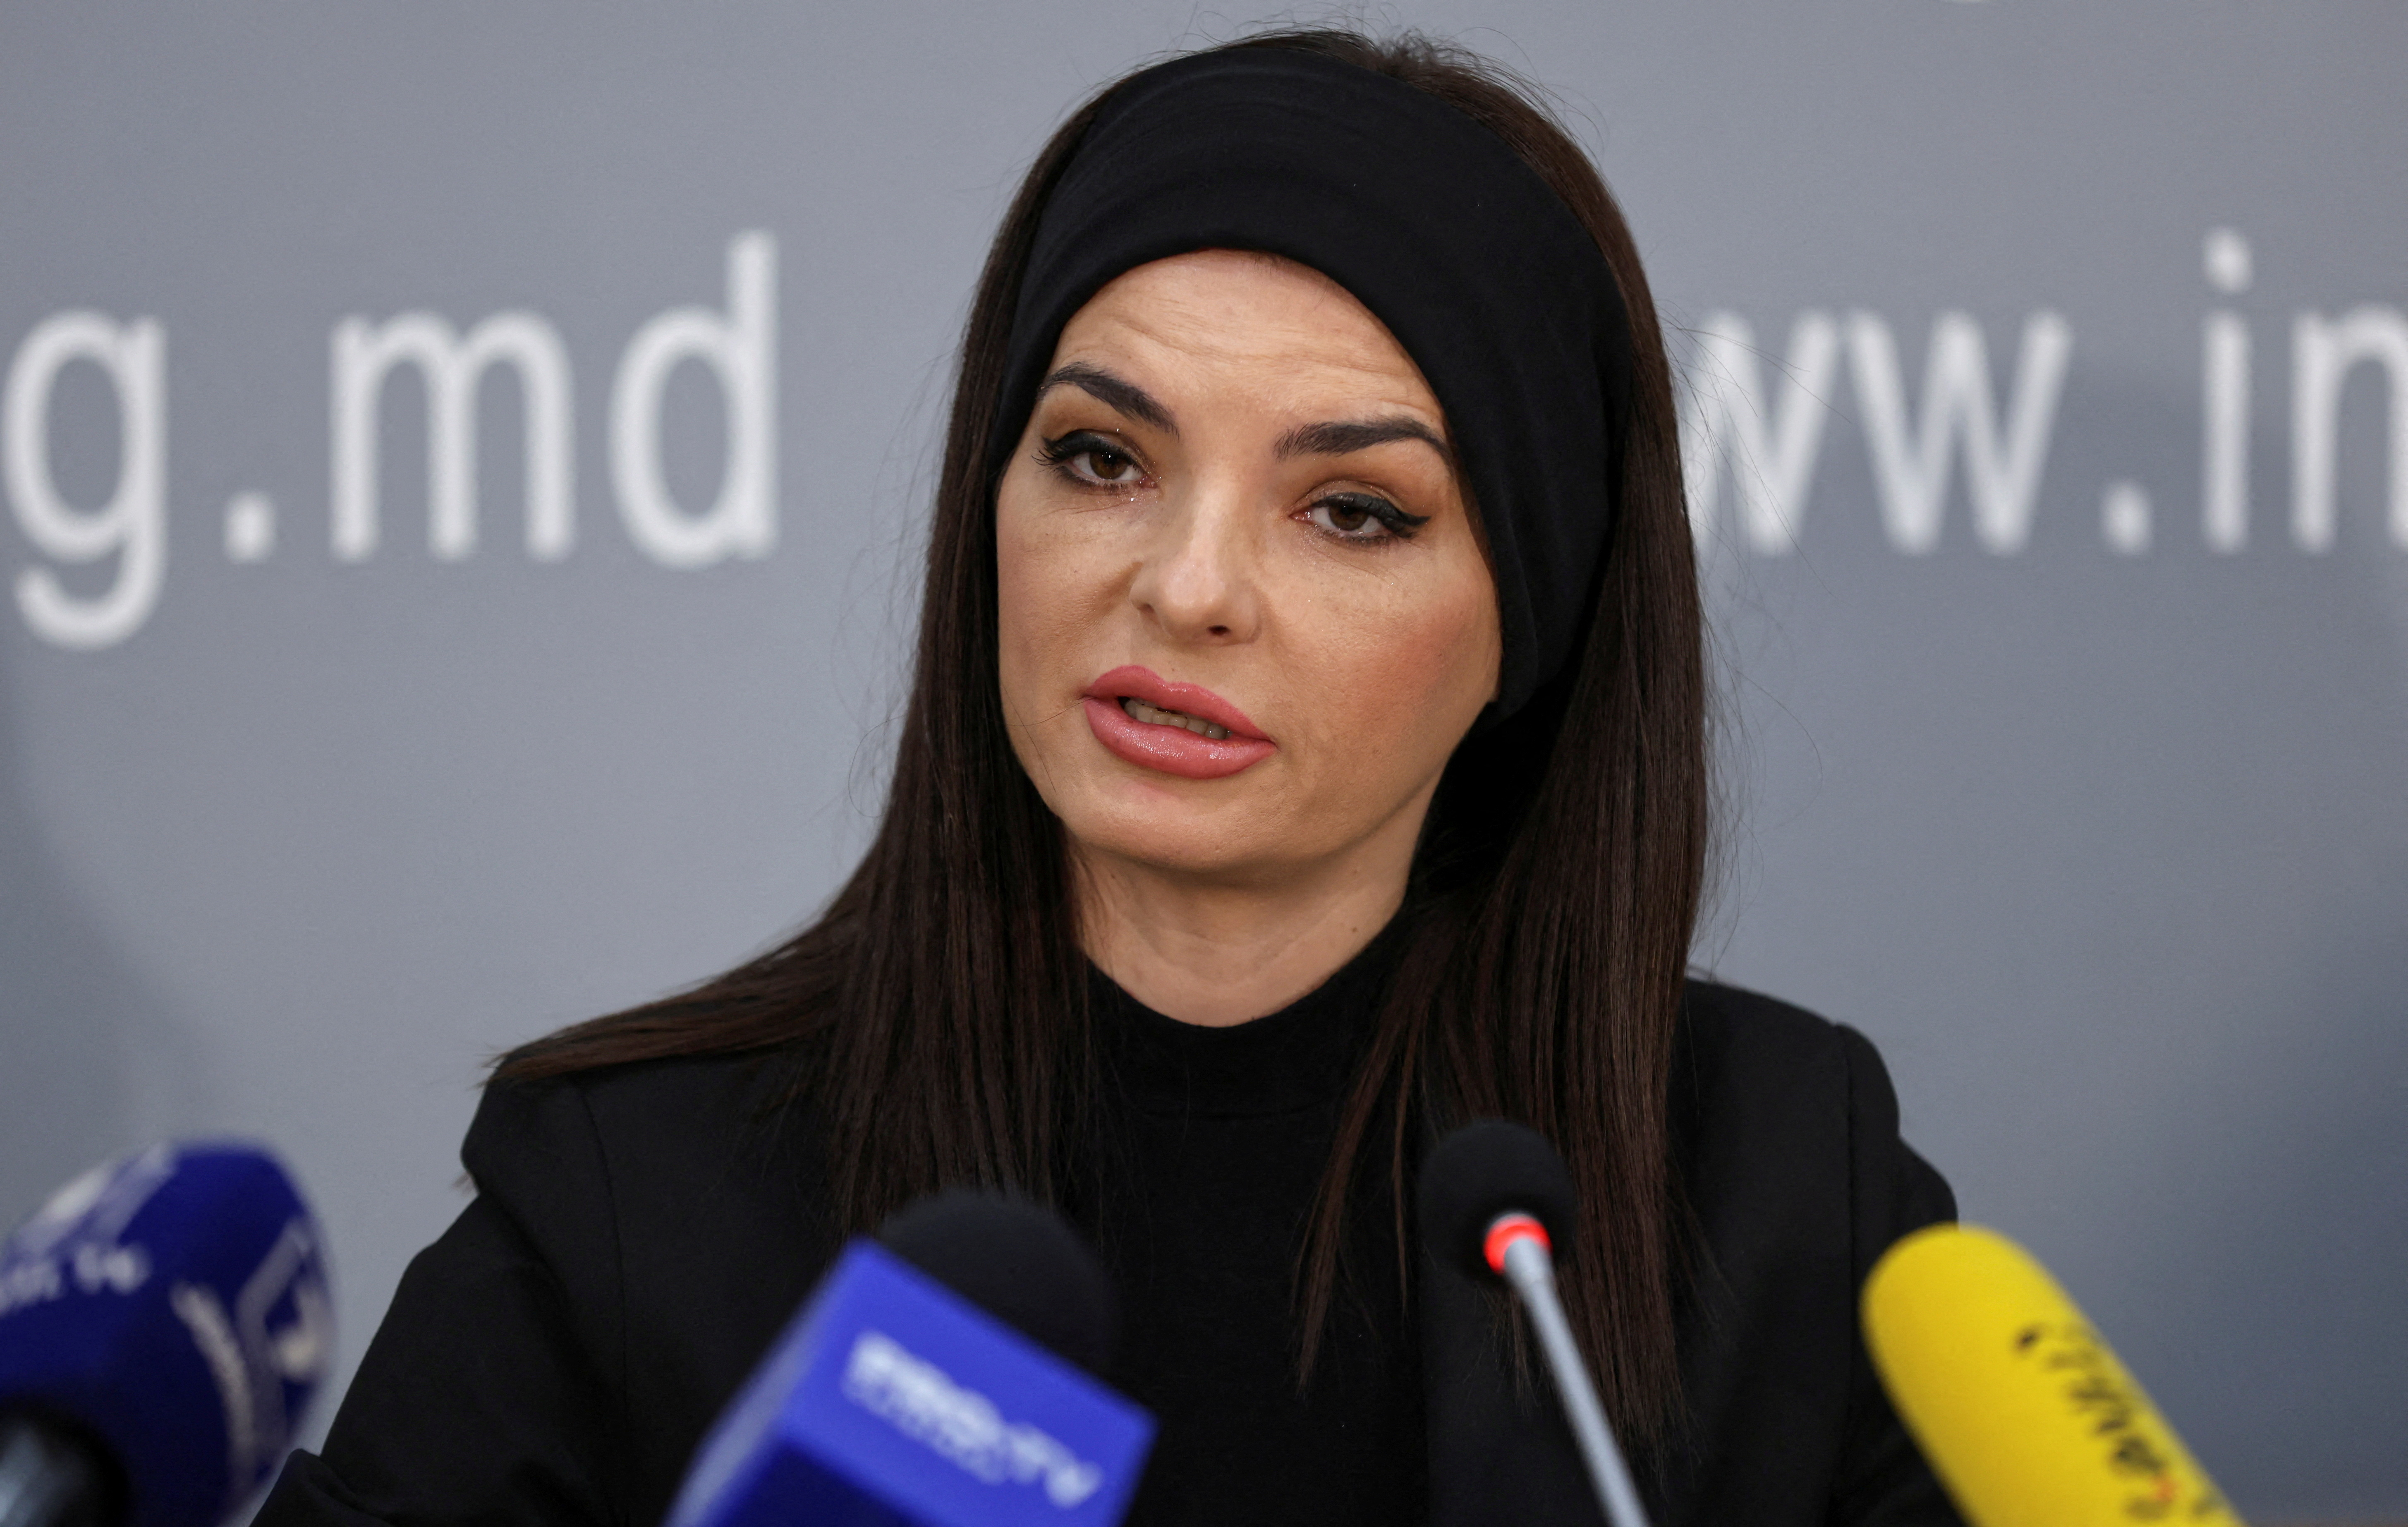 Leader of Moldova's Gagauzia region Yevgenia Gutsul attends a press conference in Chisinau